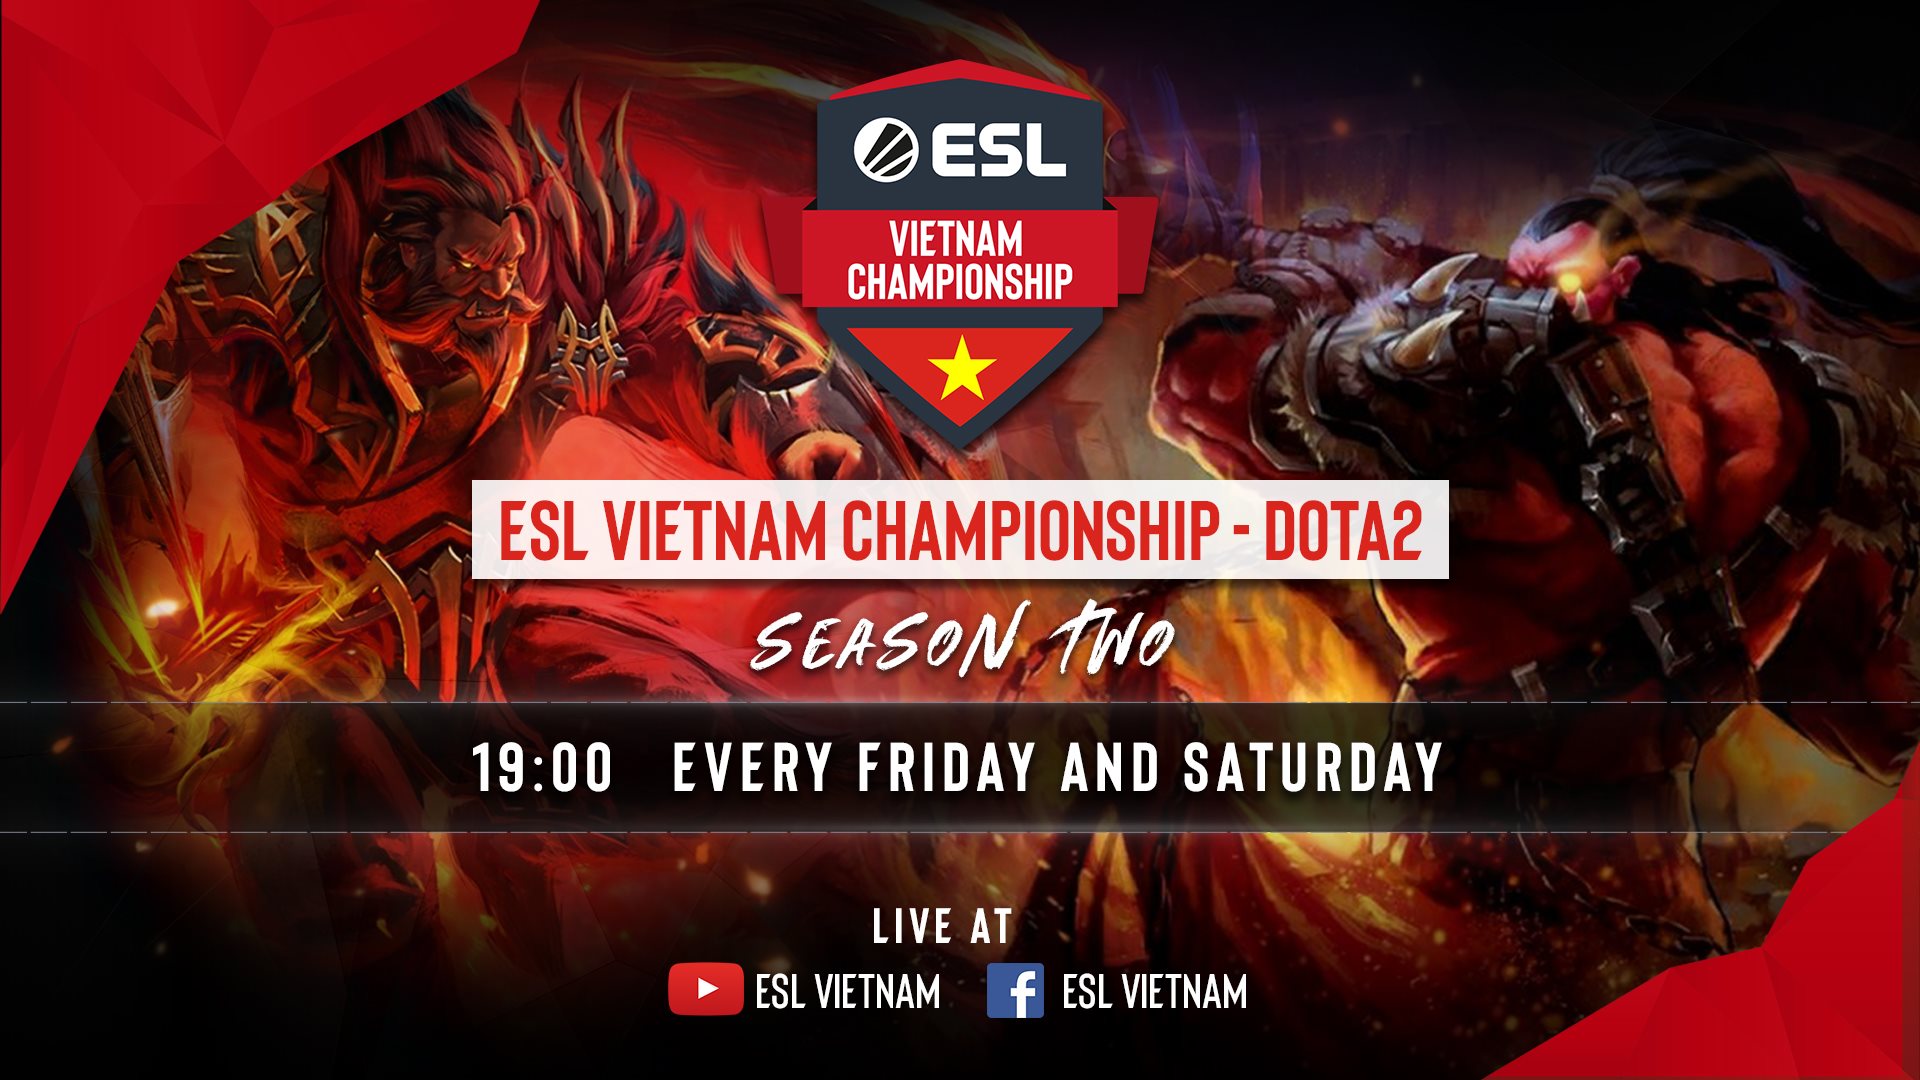 Khán giả tiếp tục có cơ hội ủng hộ Dota 2 nước nhà với ESL Vietnam Championship Season 2